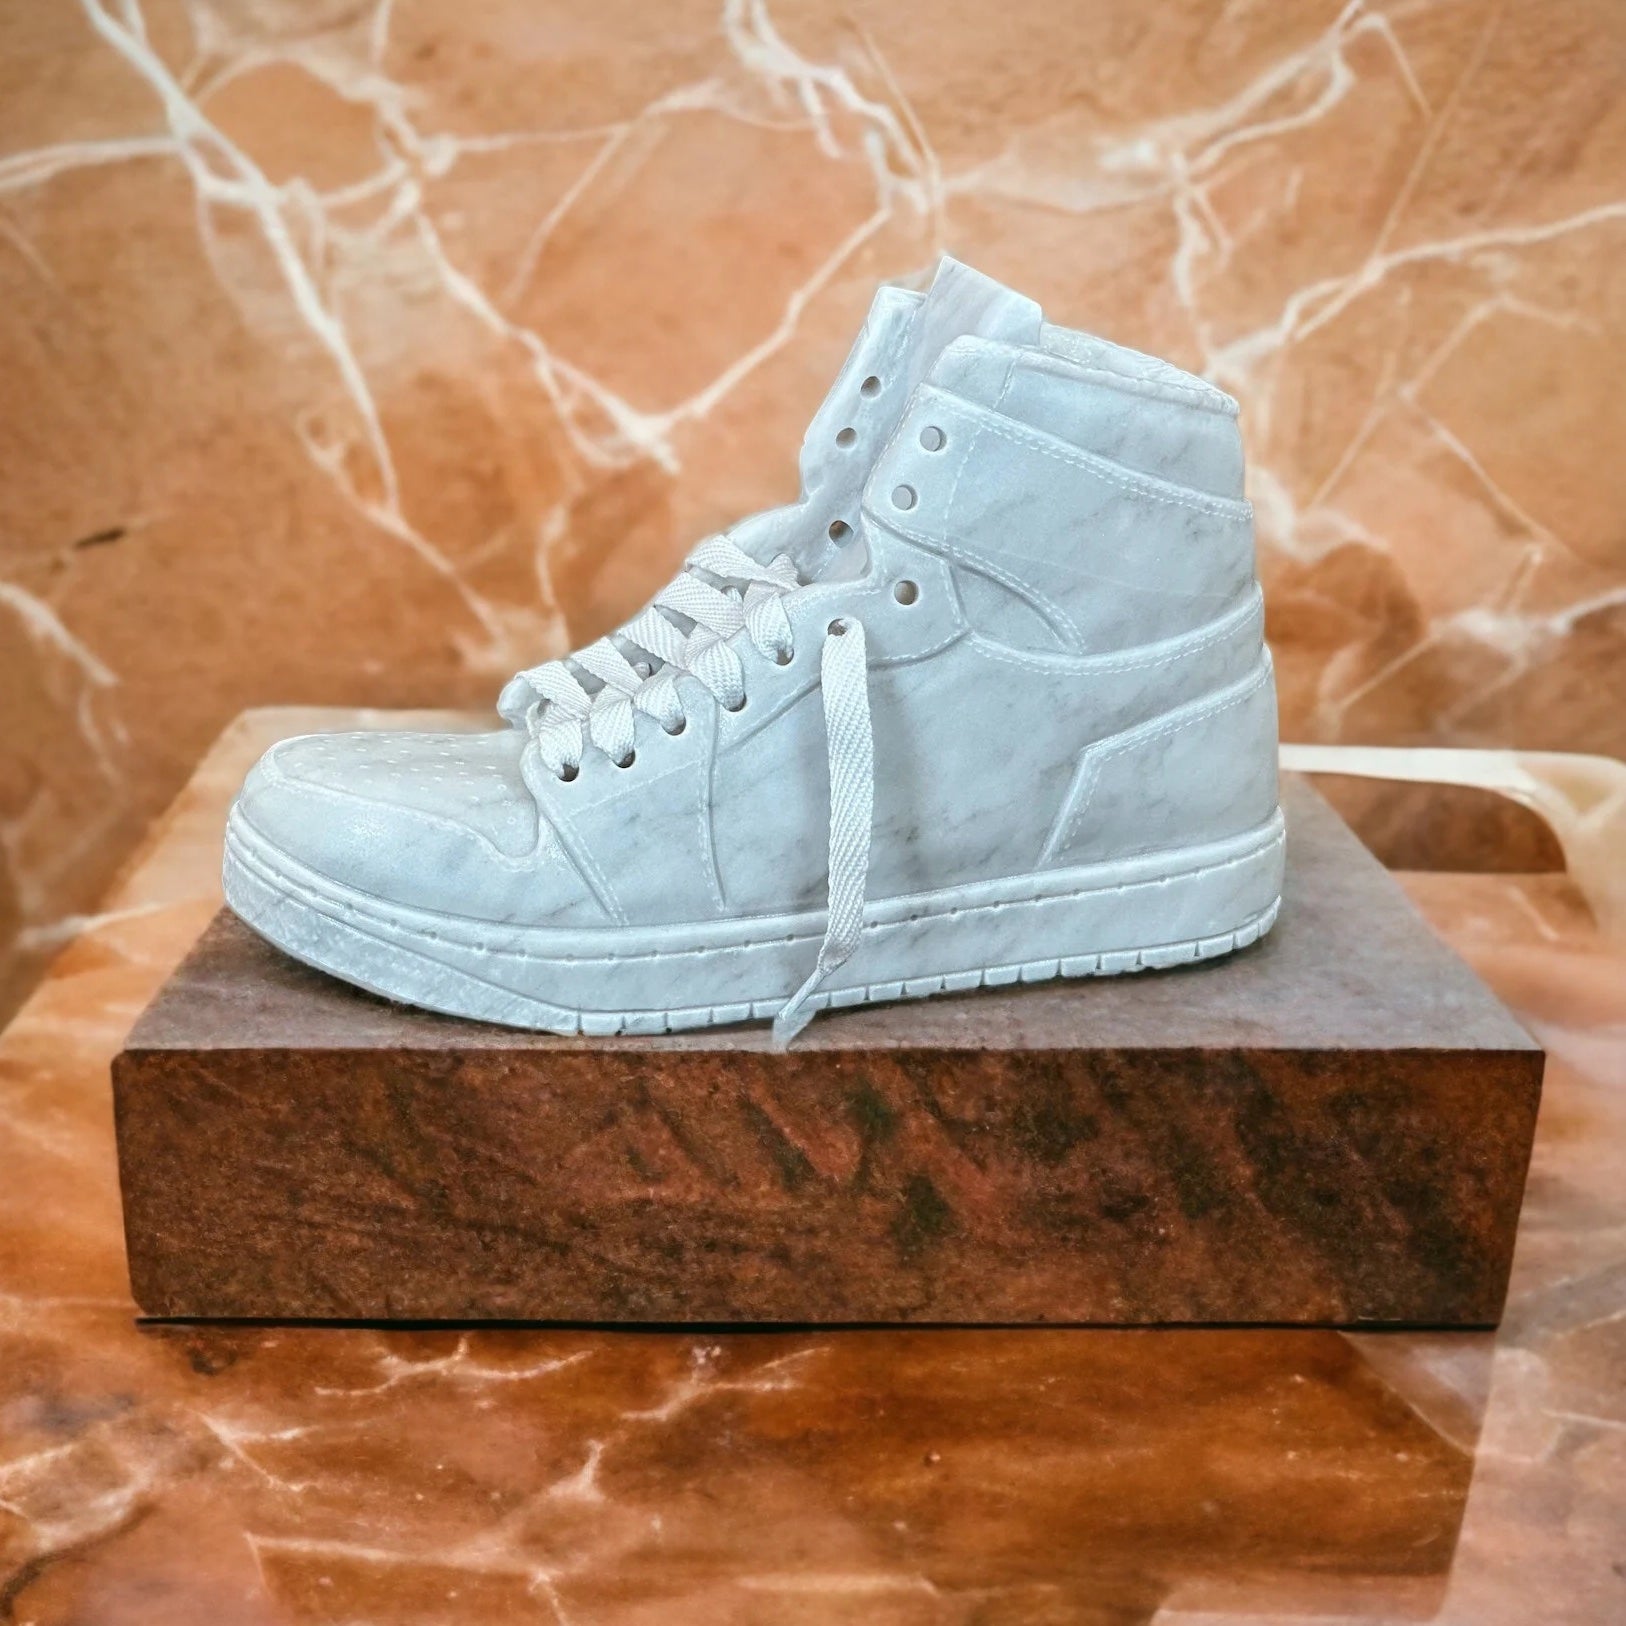 Marble Nike Inspired Hightop Sneaker Sculpture